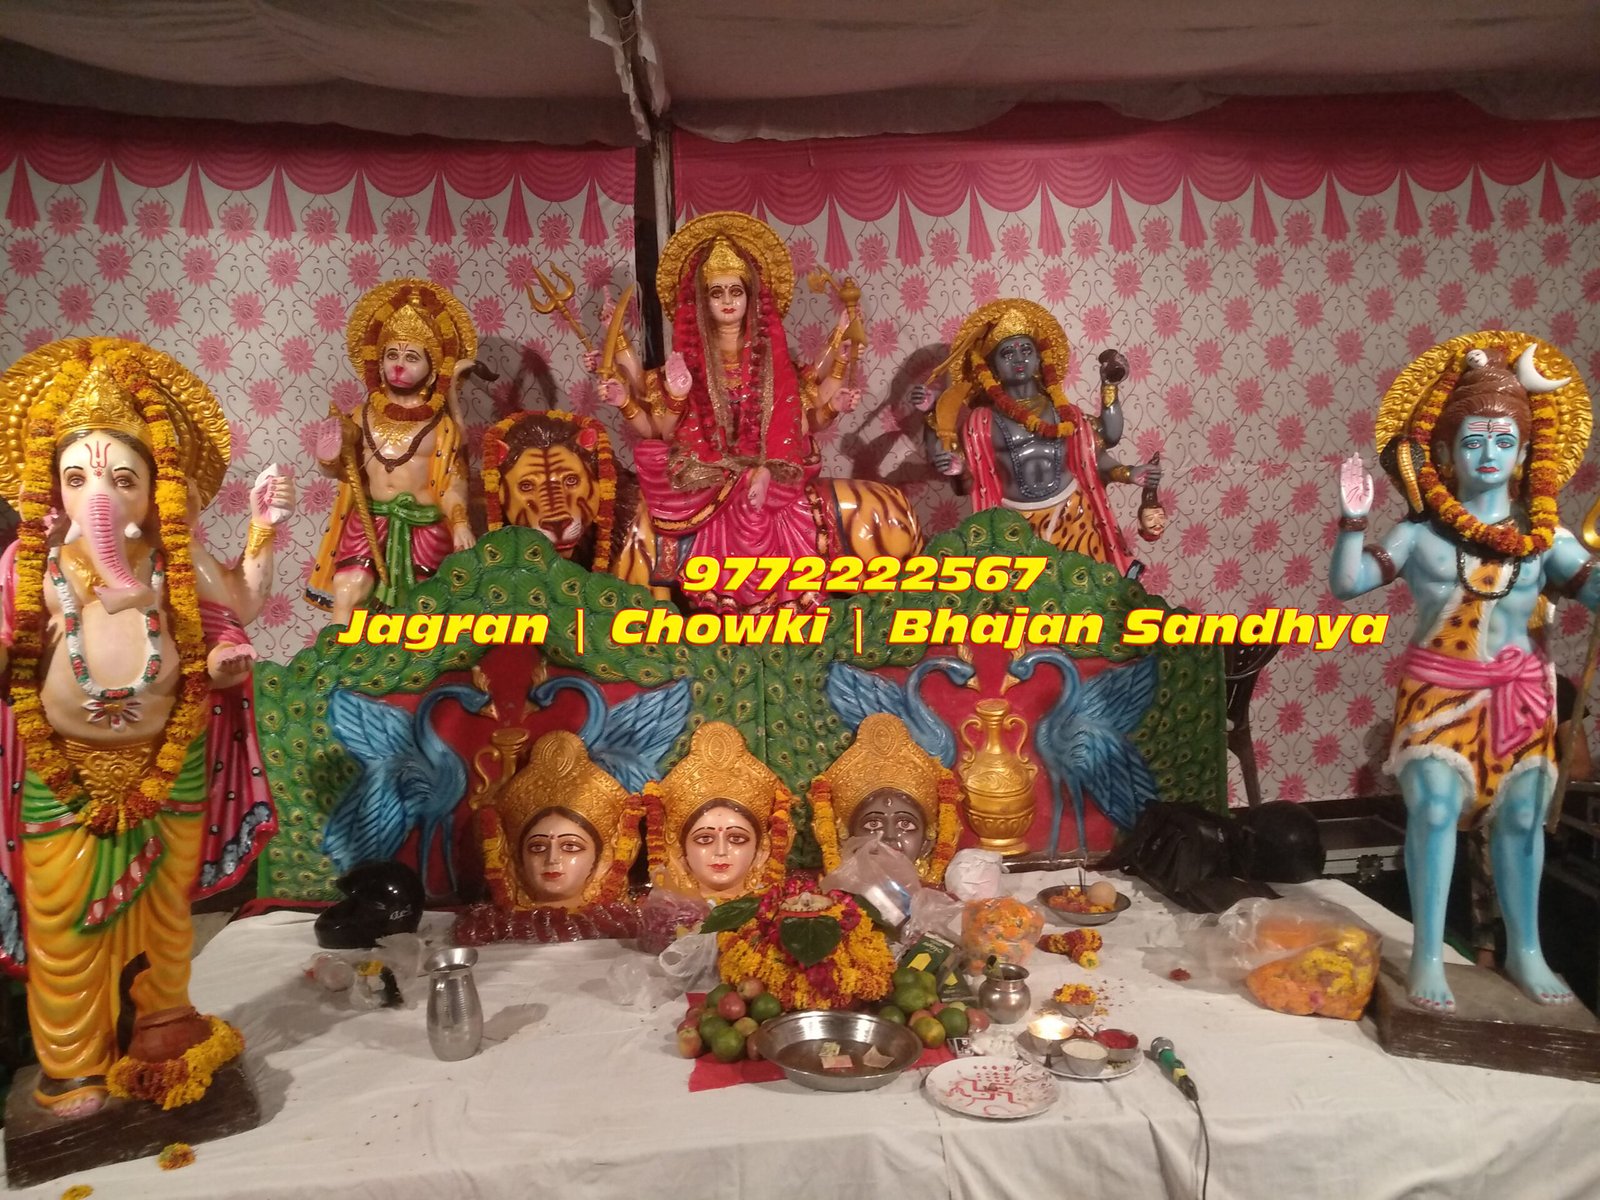 Maa Bhagwati Jagran Mata Ki Chowki Bhajan Sandhya Organizing Services Jaipur